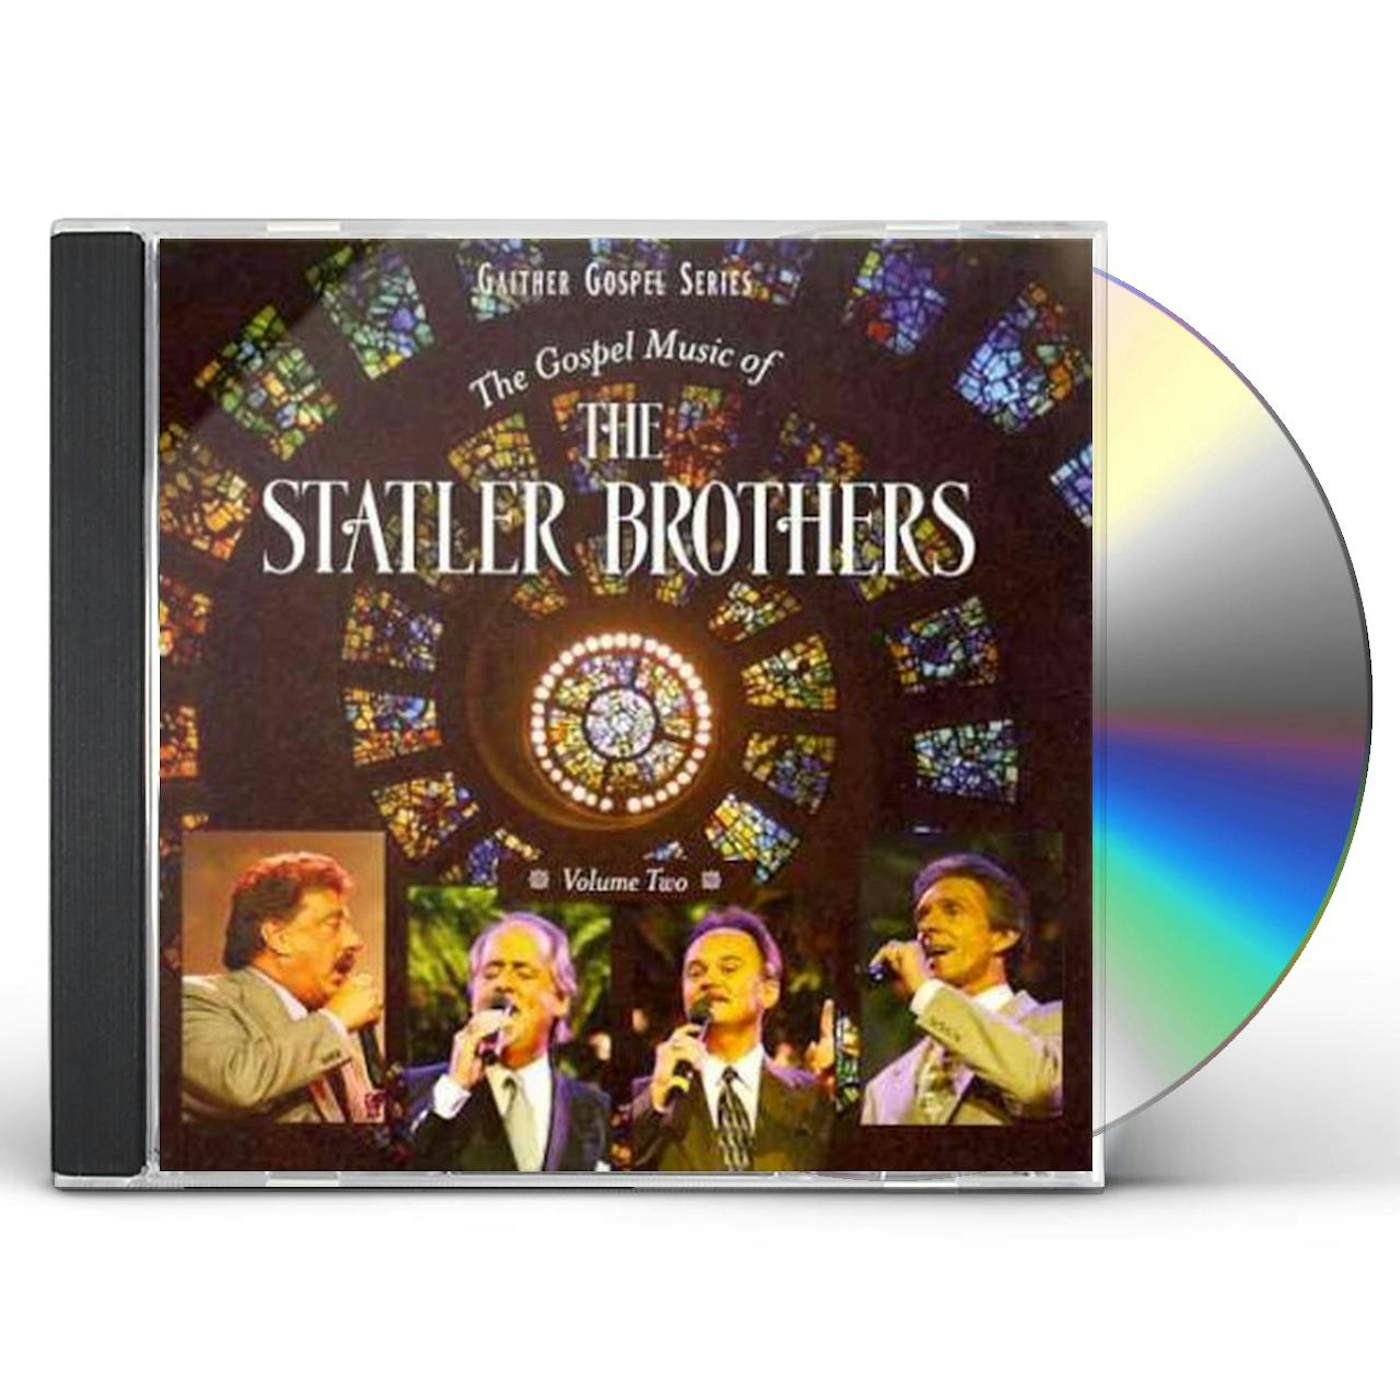 The Statler Brothers GOSPEL MUSIC 2 CD